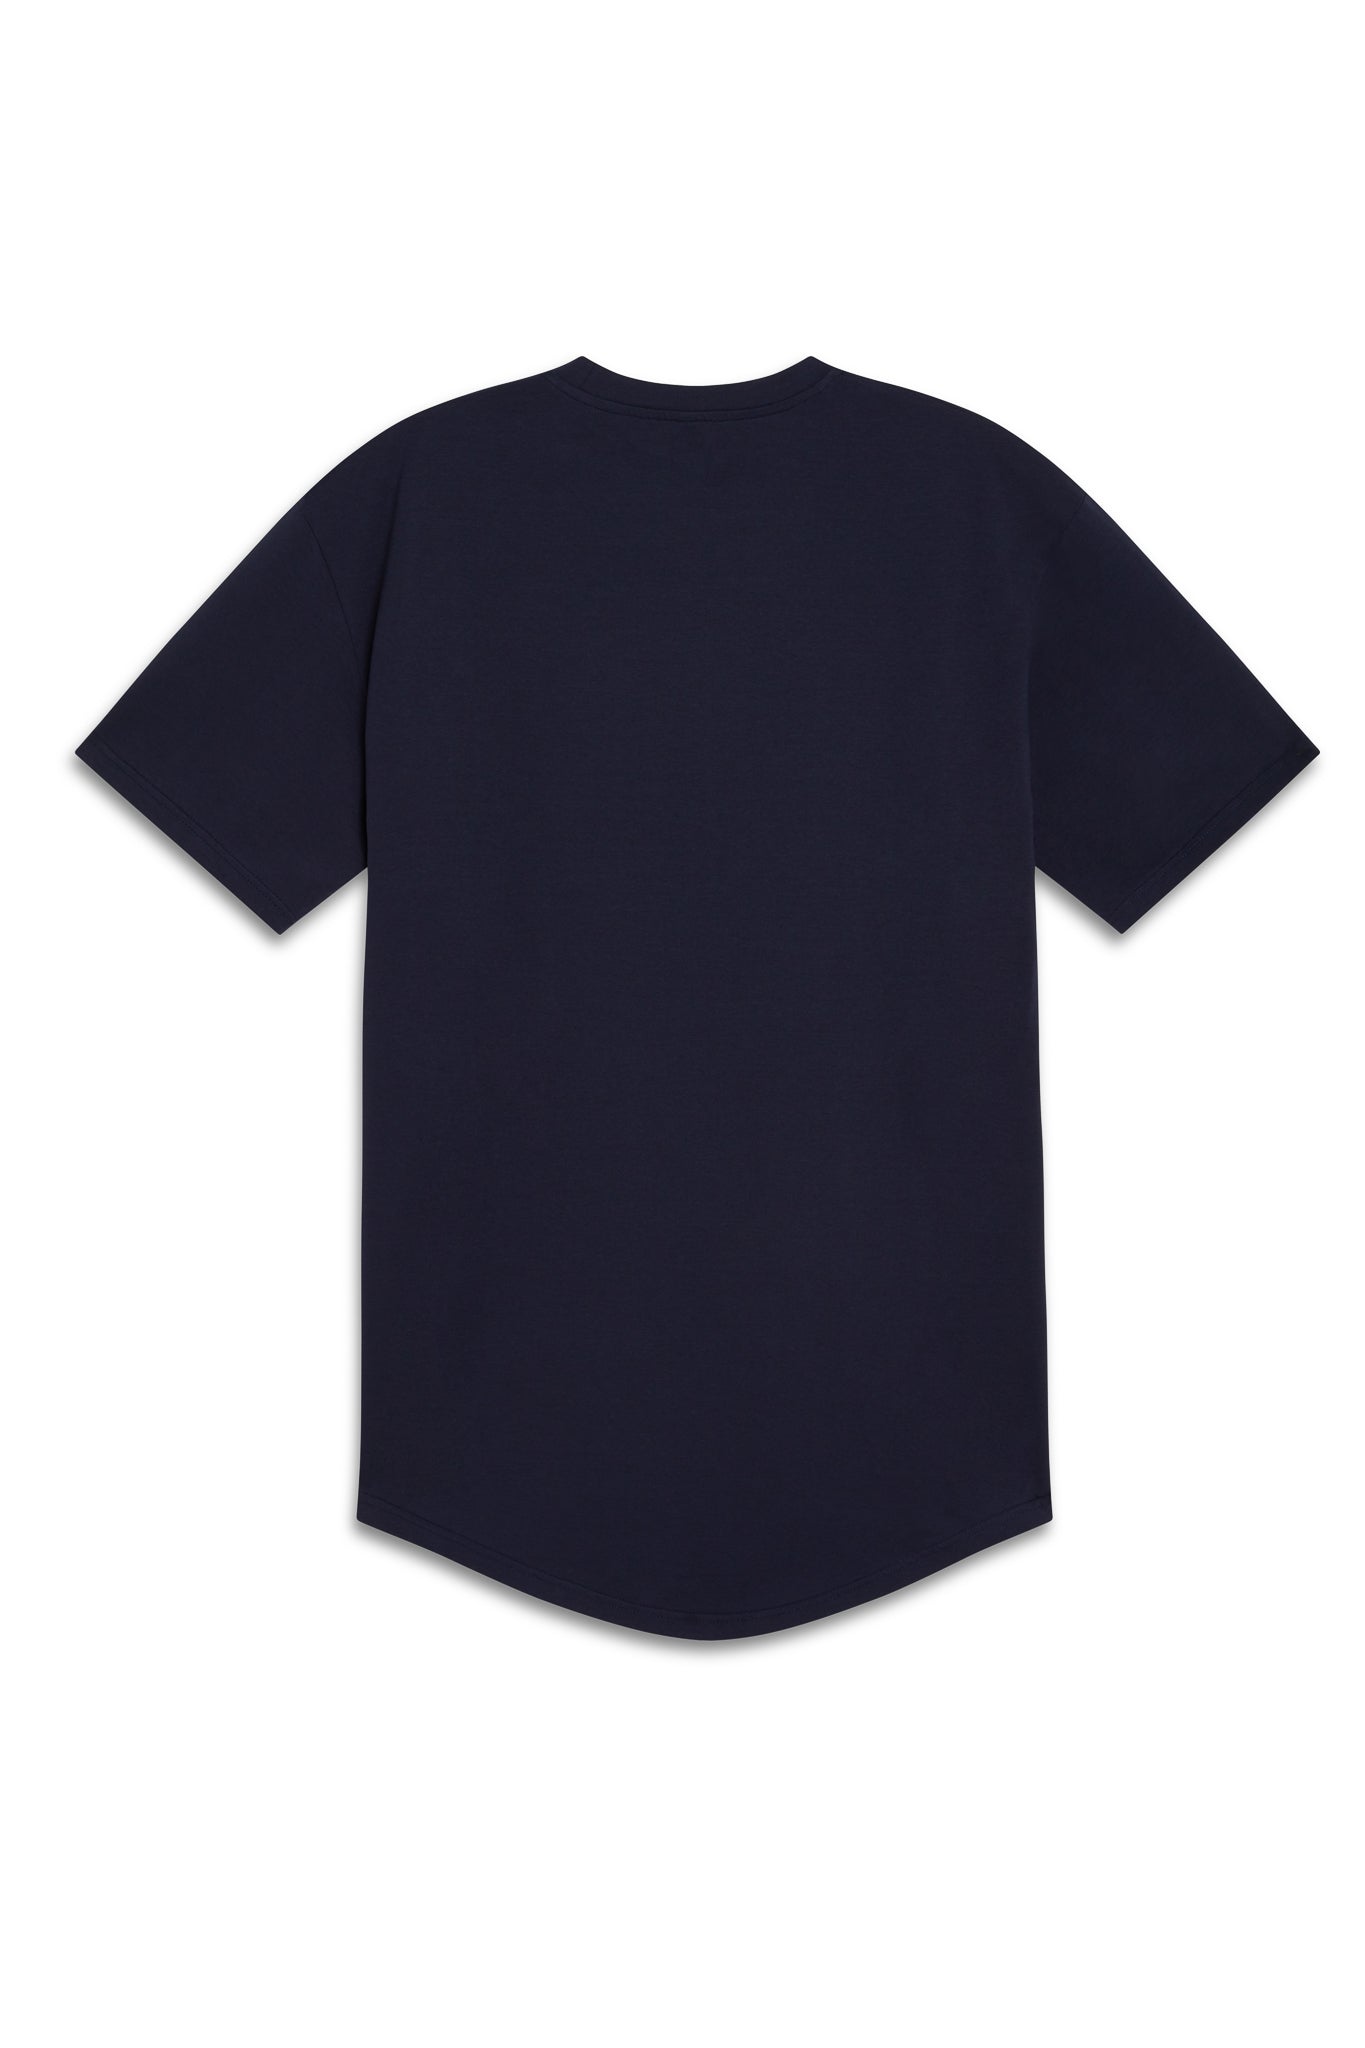 Men's Round Hem Athletic T-Shirt - Navy